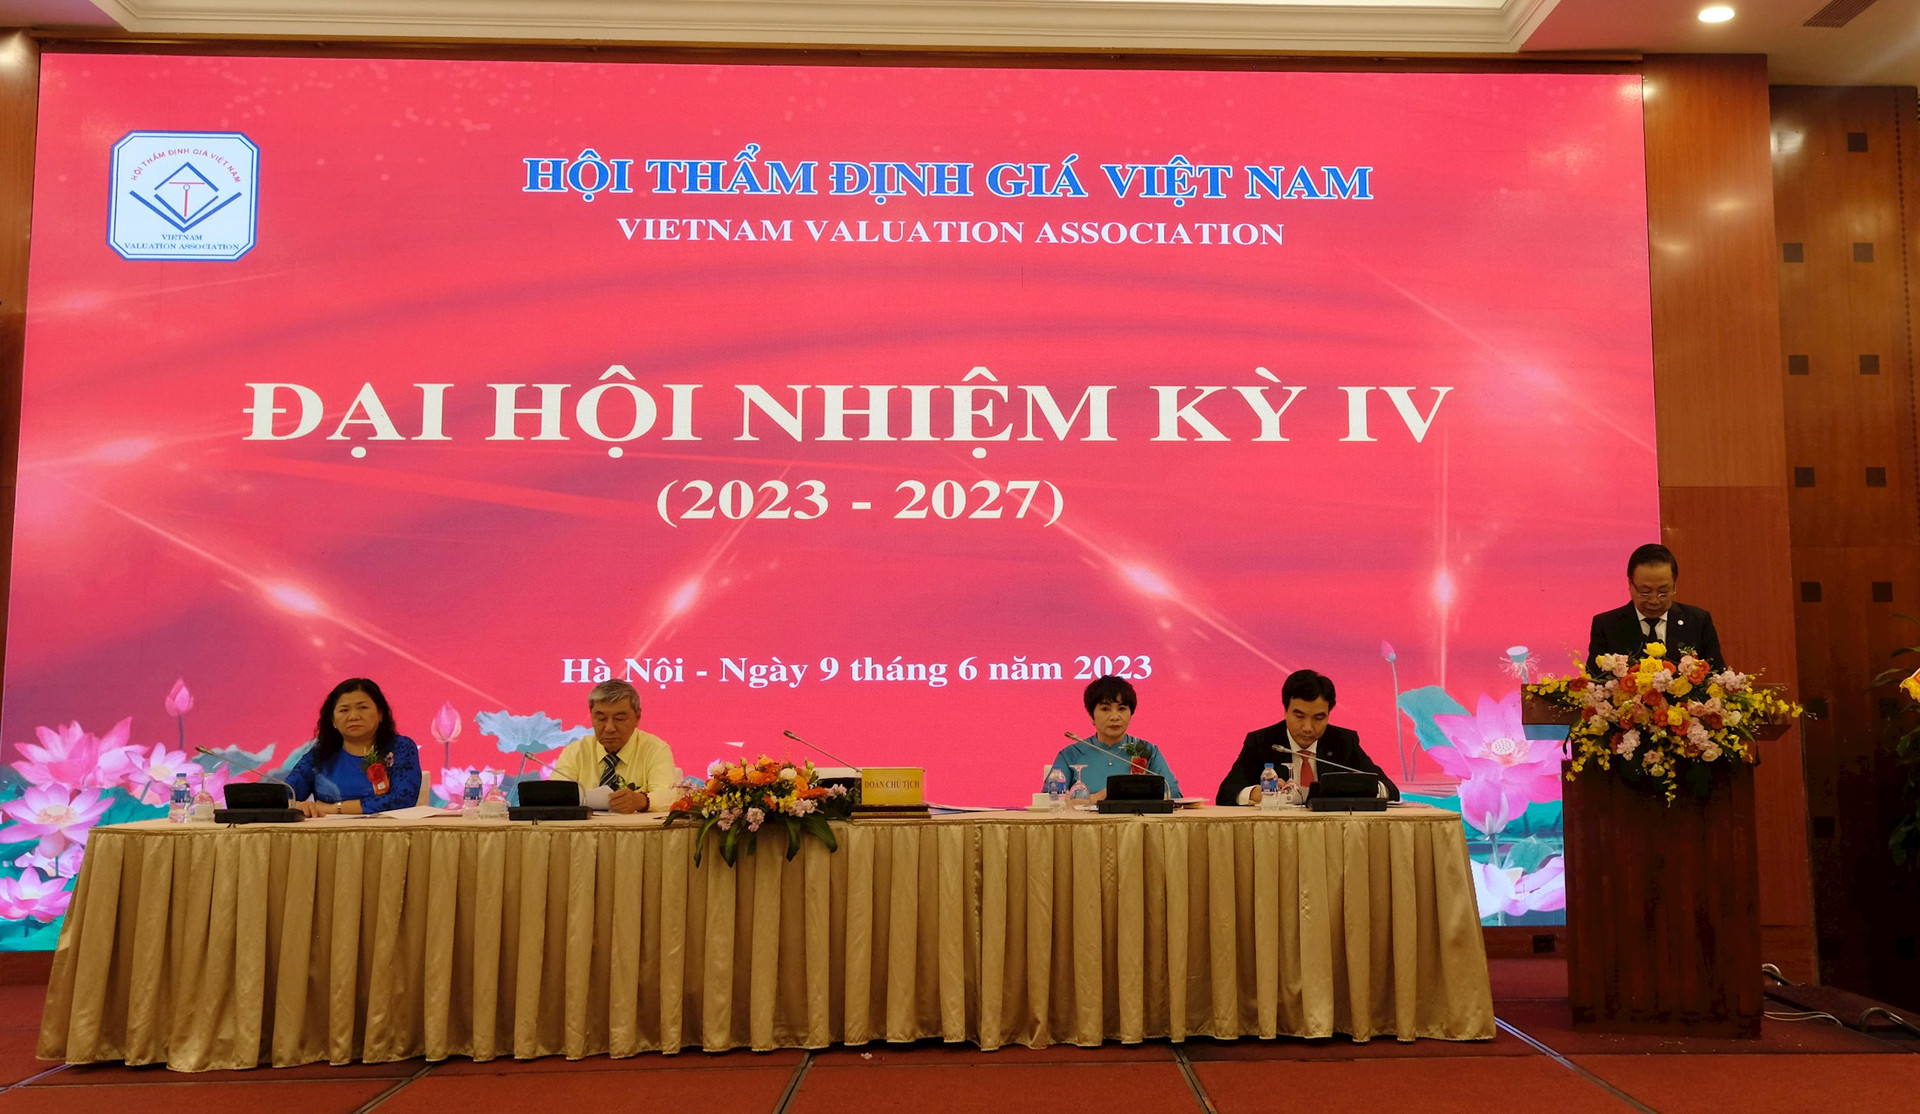 Quyết tâm xây dựng Hội Thẩm định giá Việt Nam thành một tổ chức nghề nghiệp vững mạnh